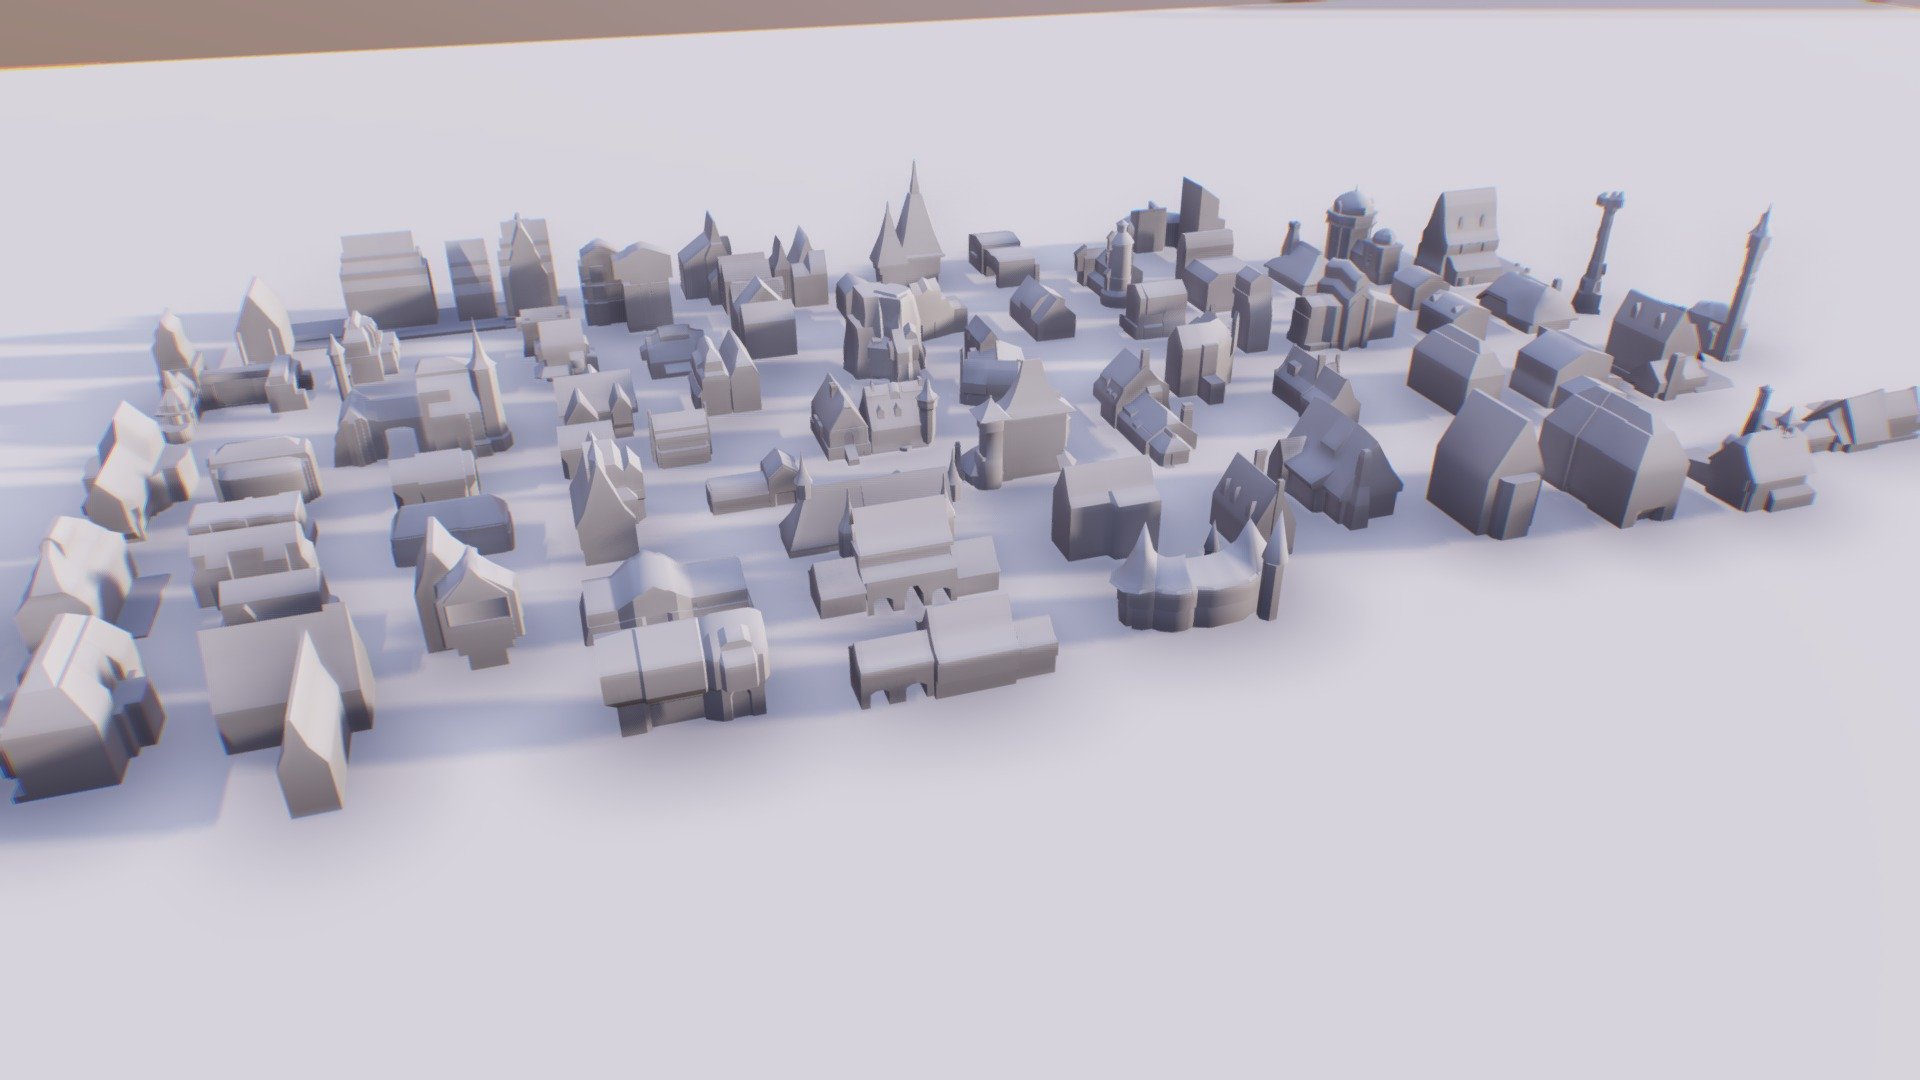 work in progress - MRVL architecture set - 3D model by ztrztr (@ztrztr3) 3d model